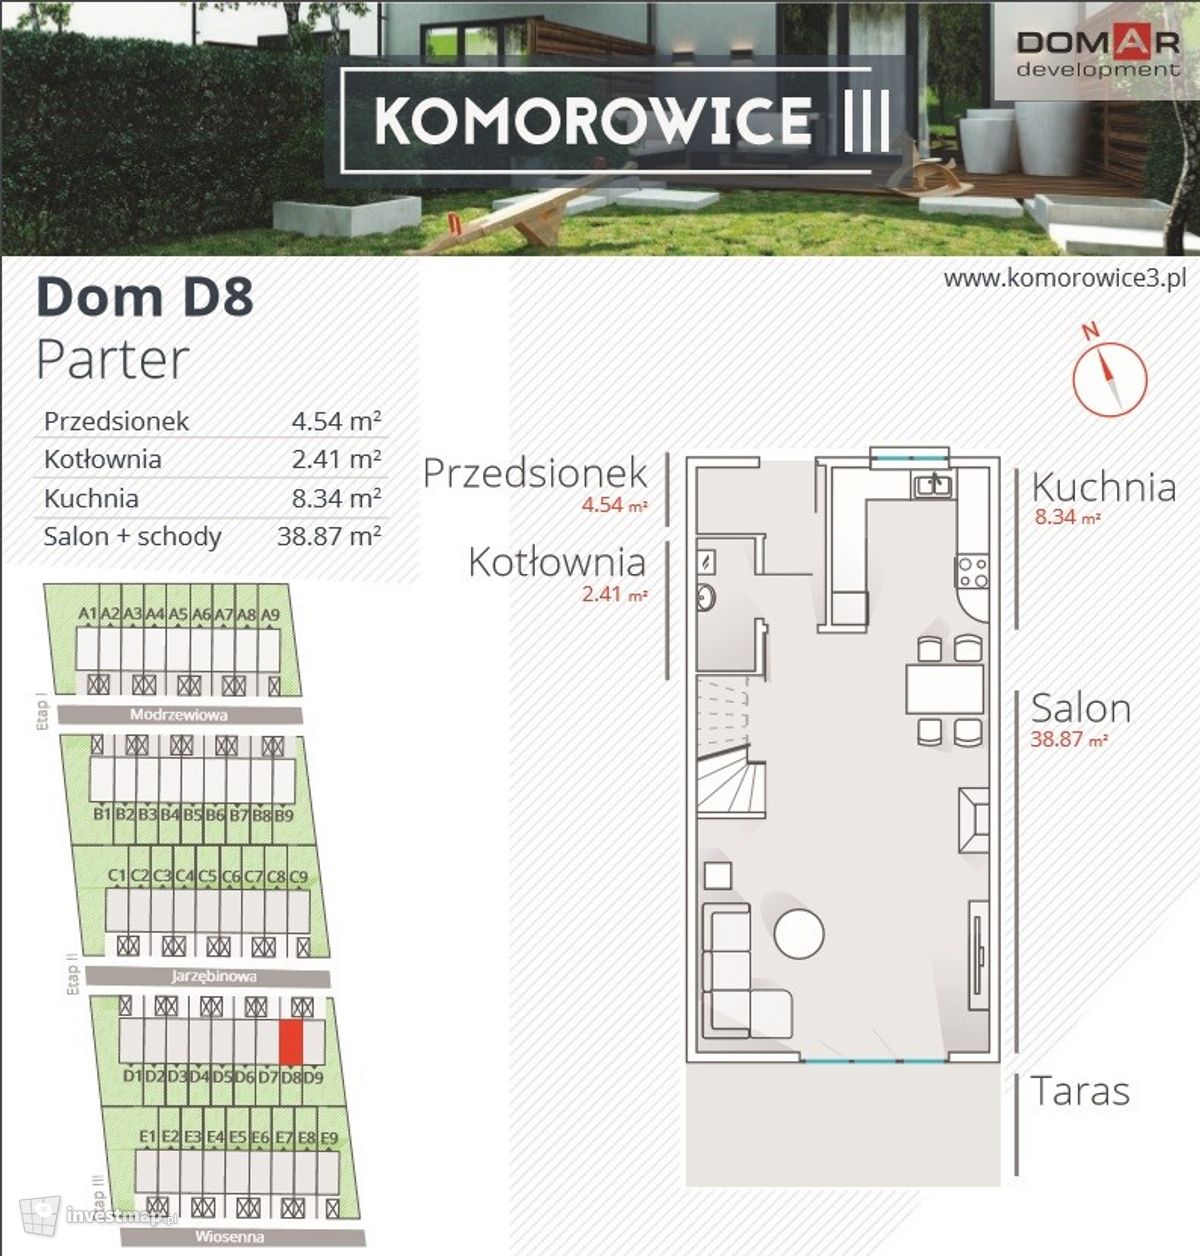 Wizualizacja [Karwiany] Osiedle "Komorowice III" dodał Domar Development 